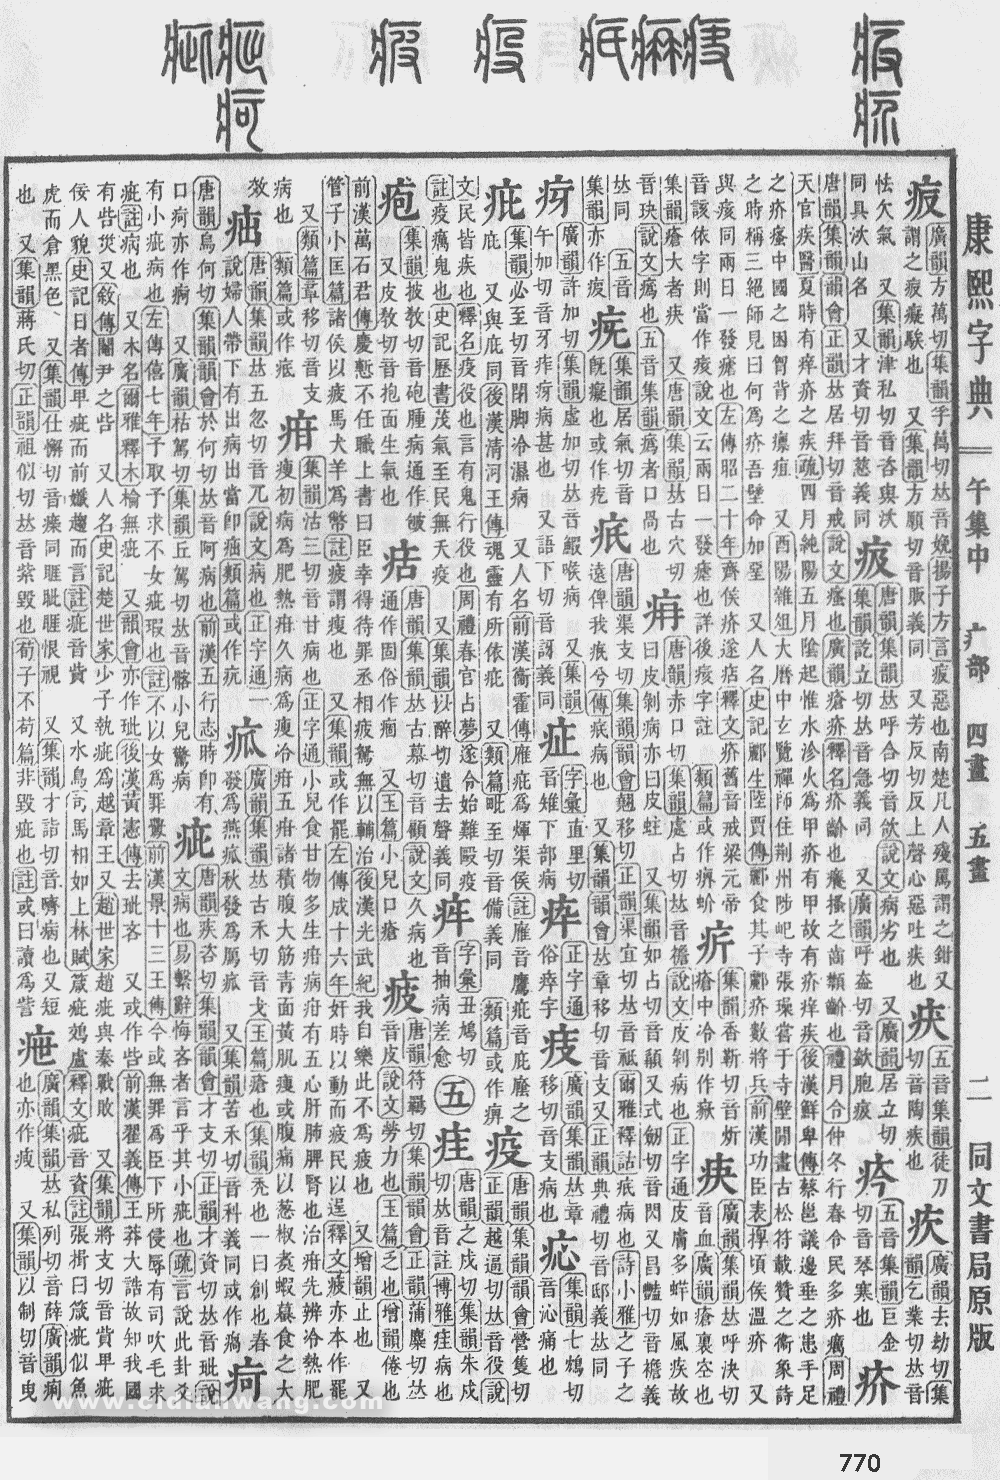 康熙字典掃描版第770頁